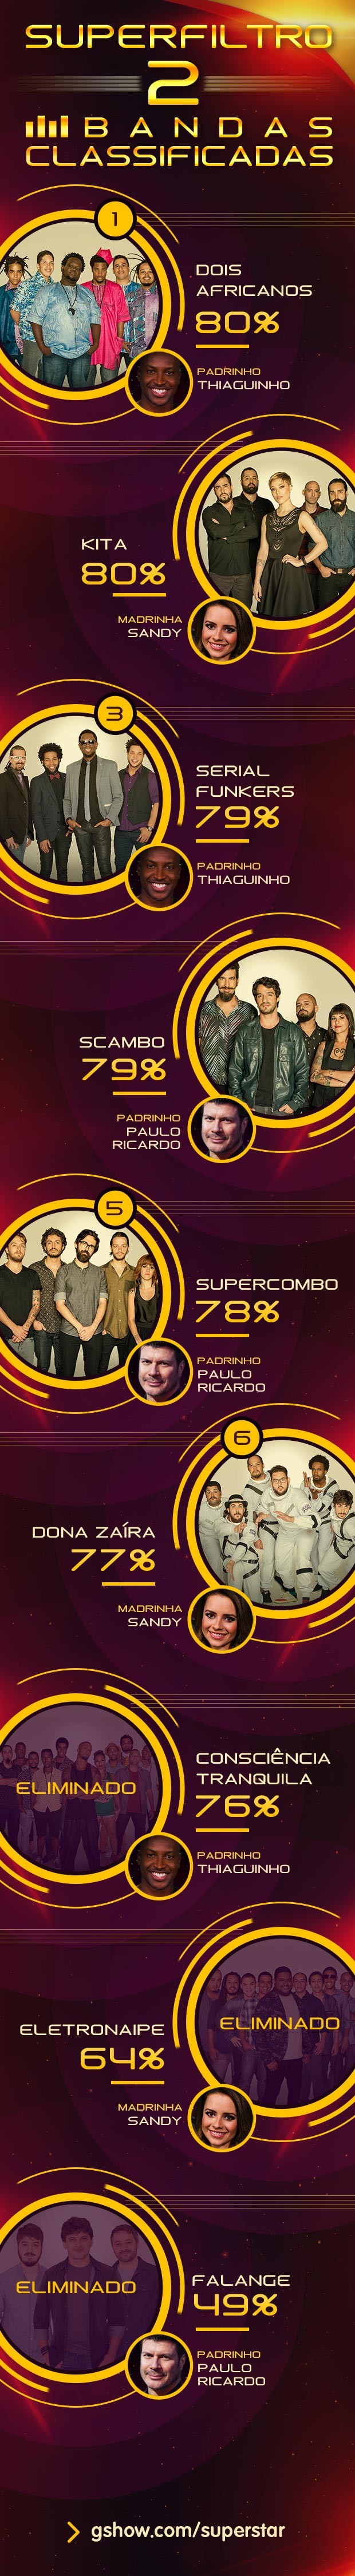 Ranking SuperFiltro 2 (Foto: TV Globo)